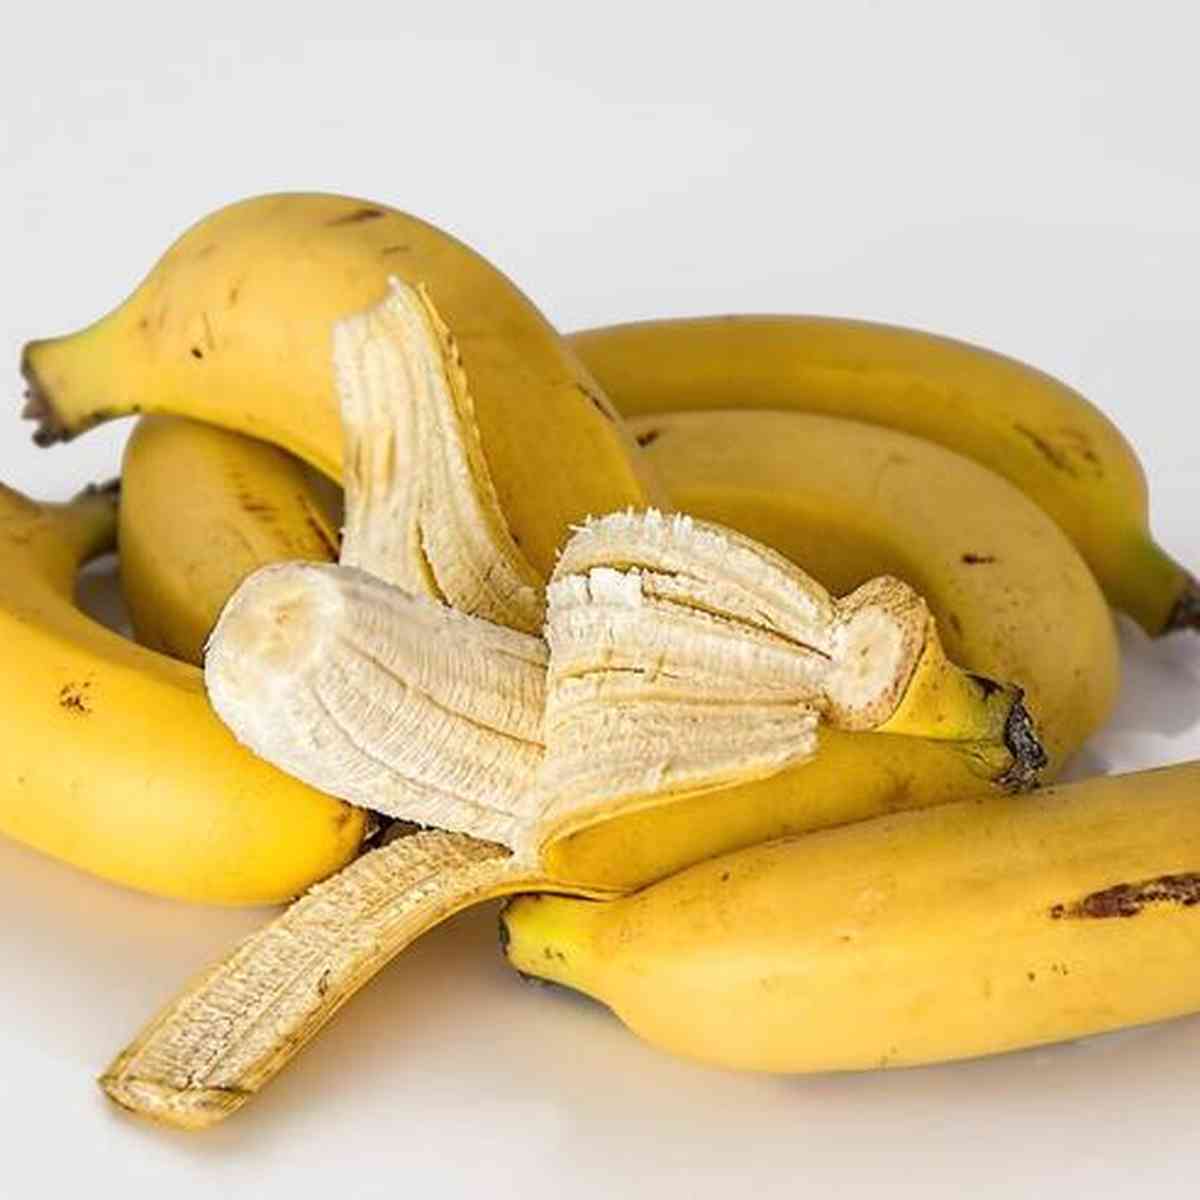 Dieta da banana funciona? Conheça os 8 pilares desse método para